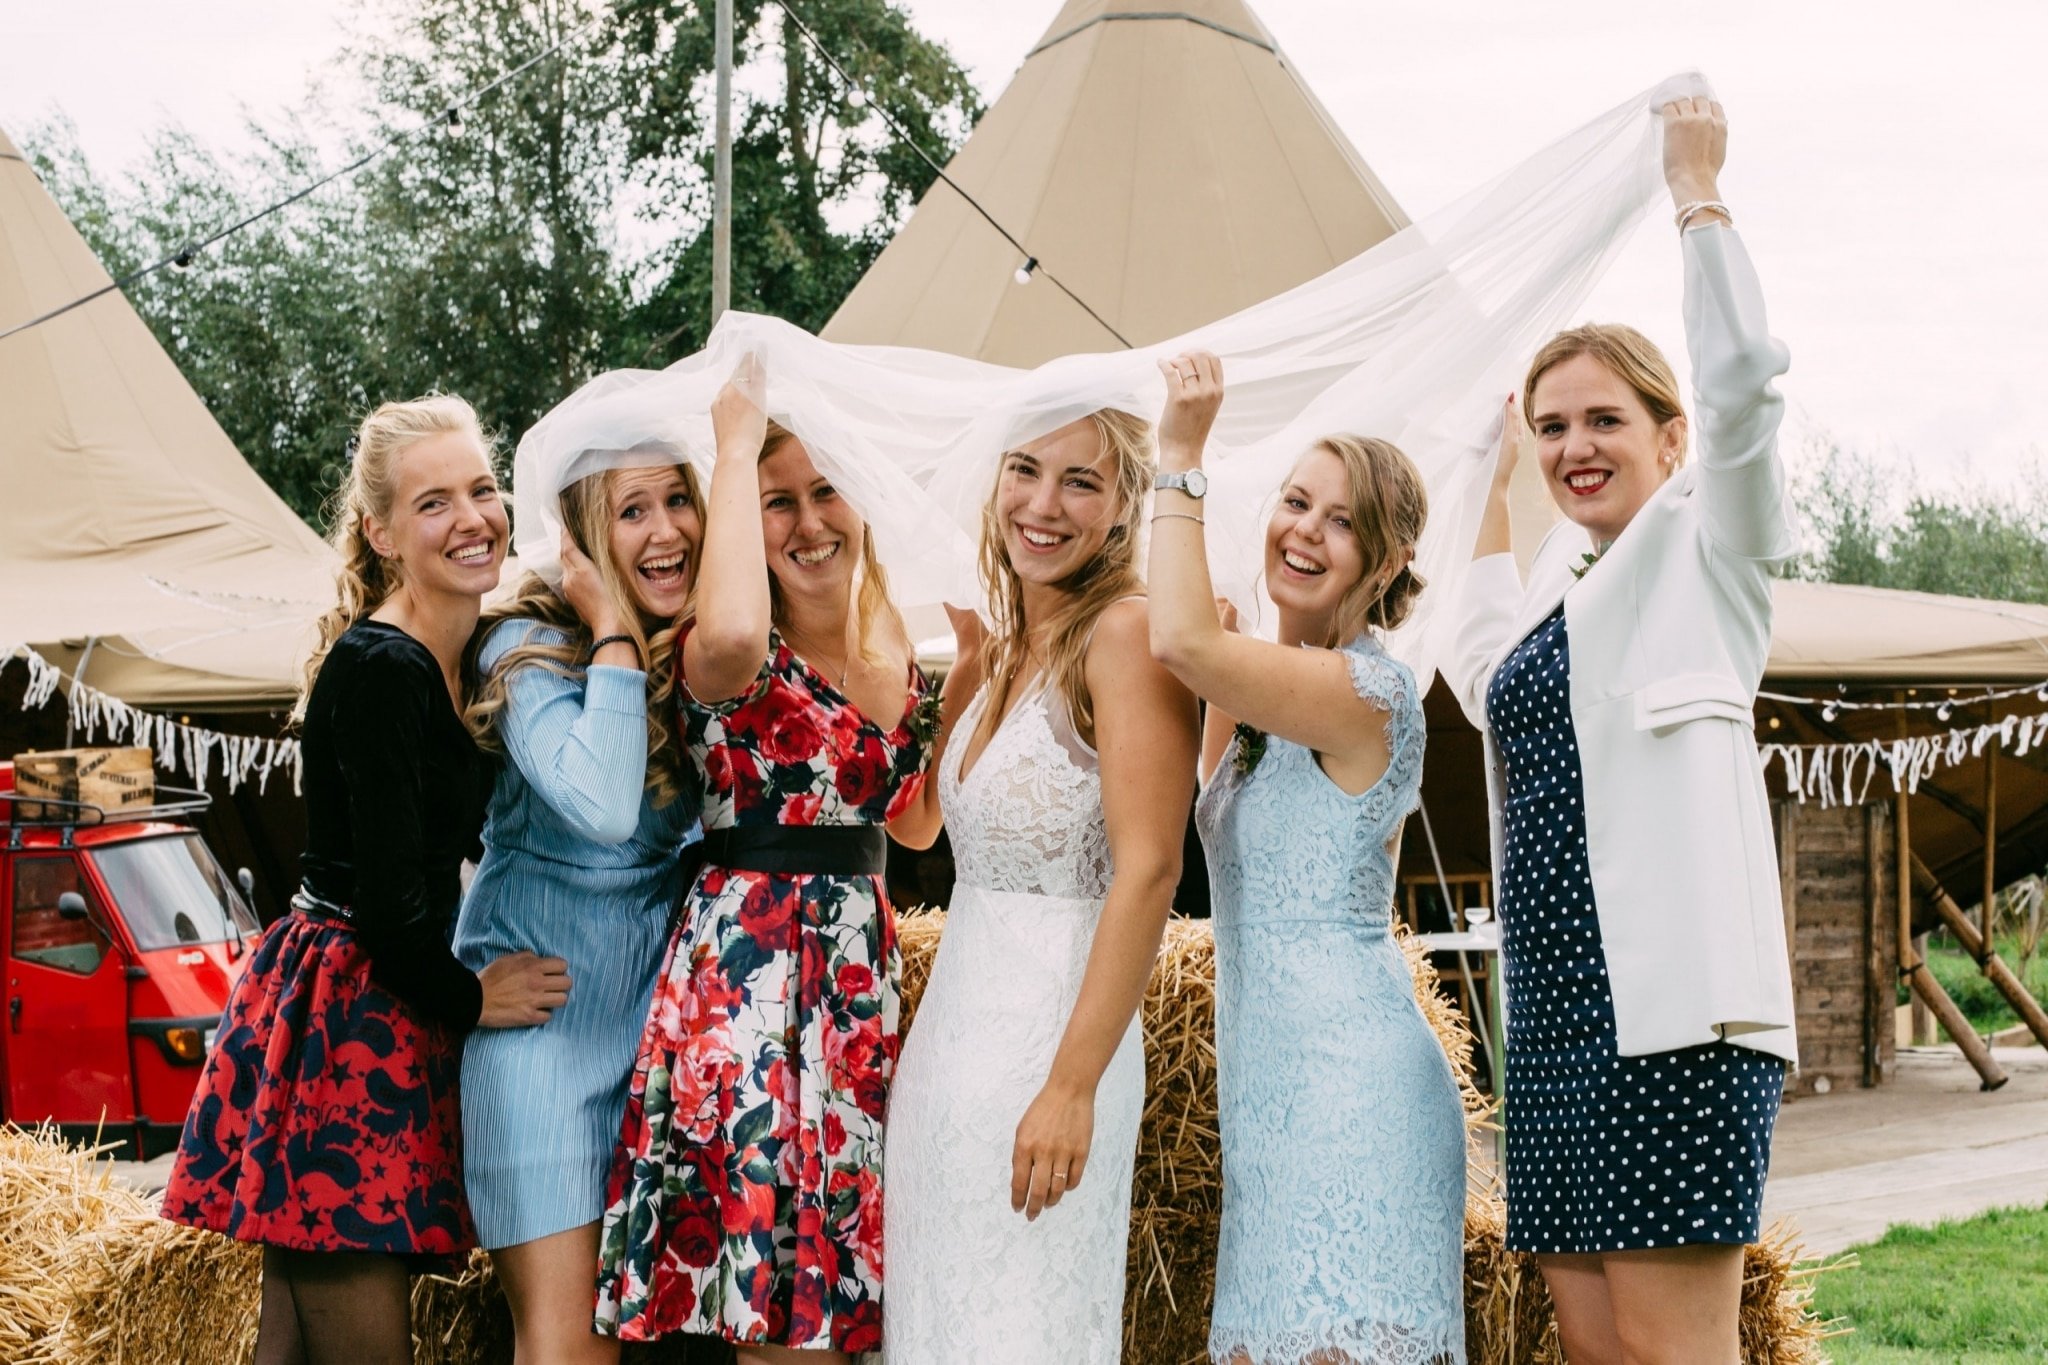 Een groep bruidsmeisjes poseert voor een tipi.